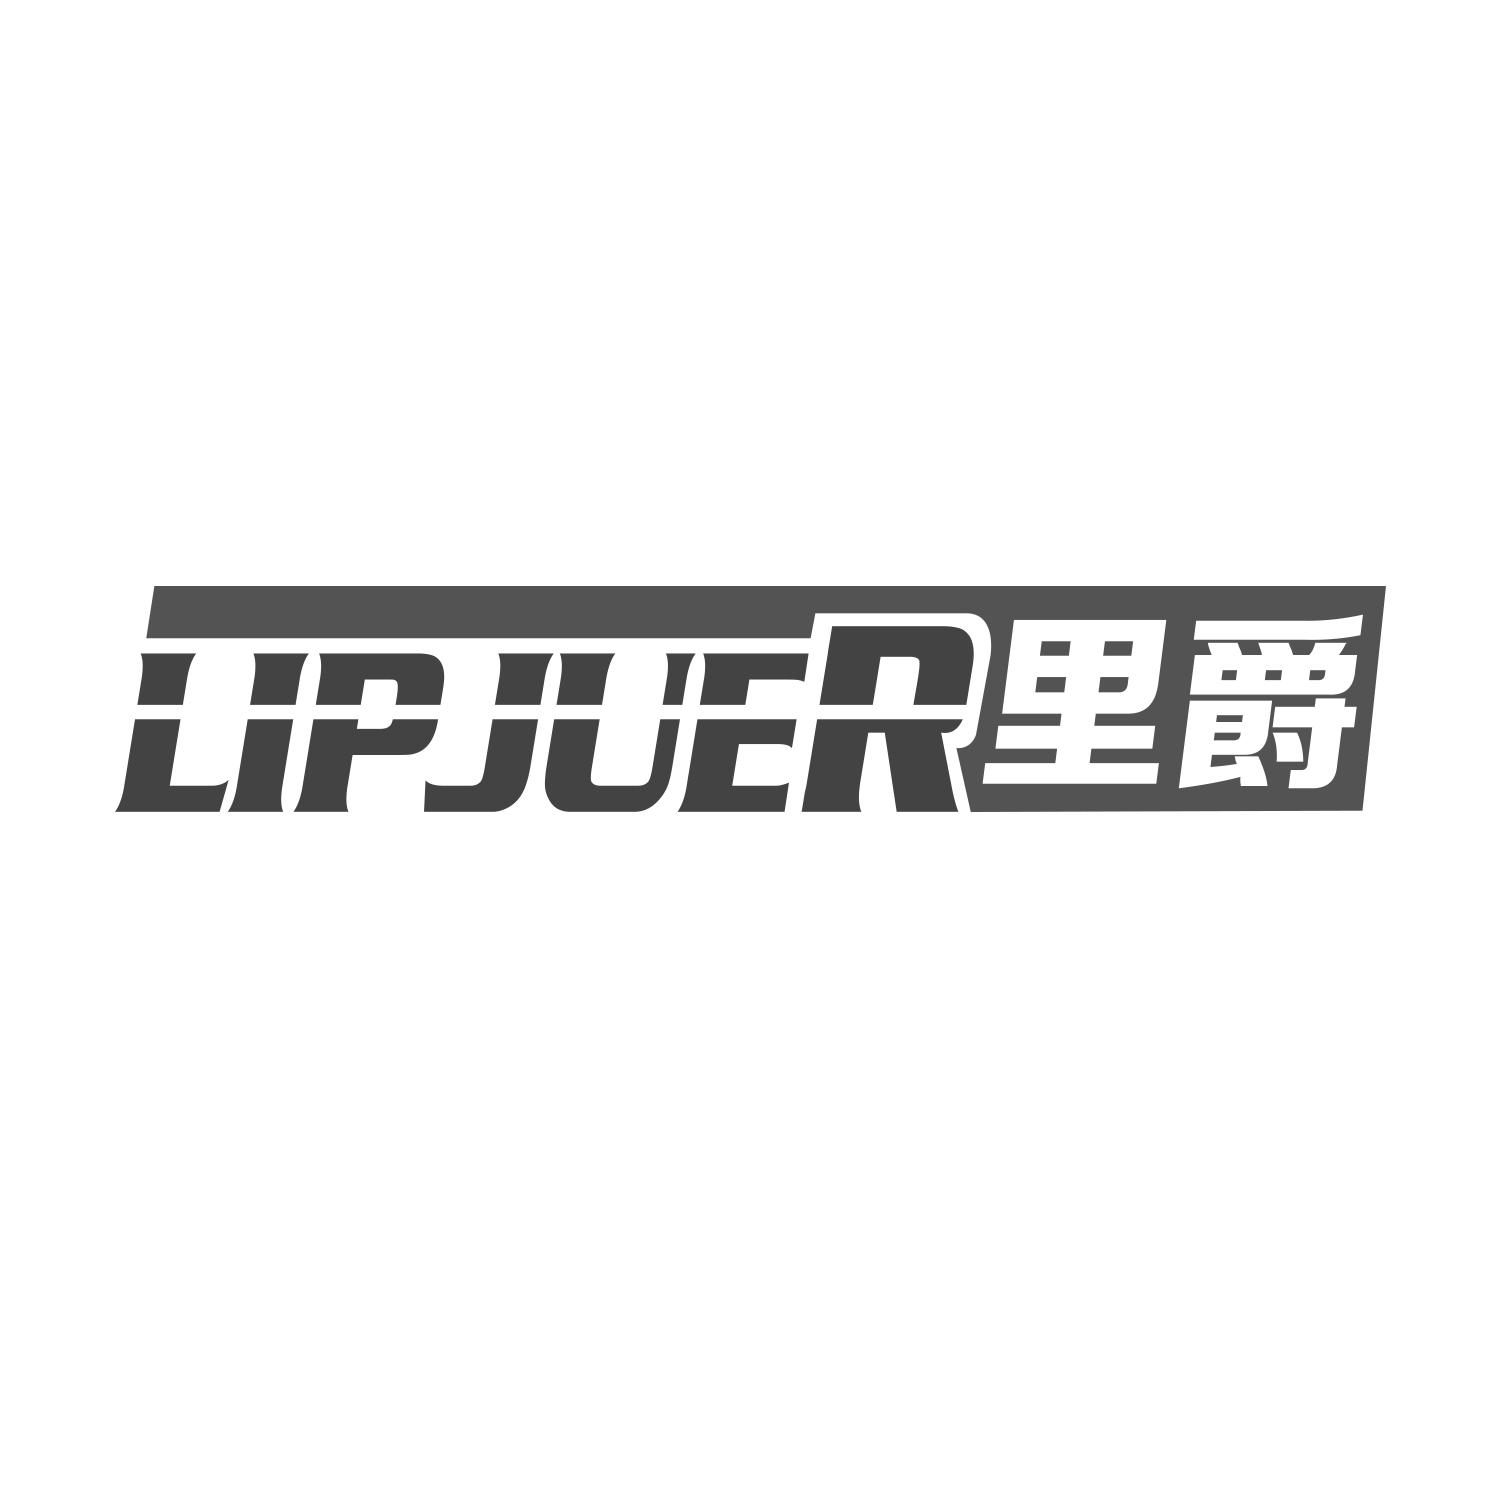 里爵
LIPJUER网络路由器商标转让费用买卖交易流程